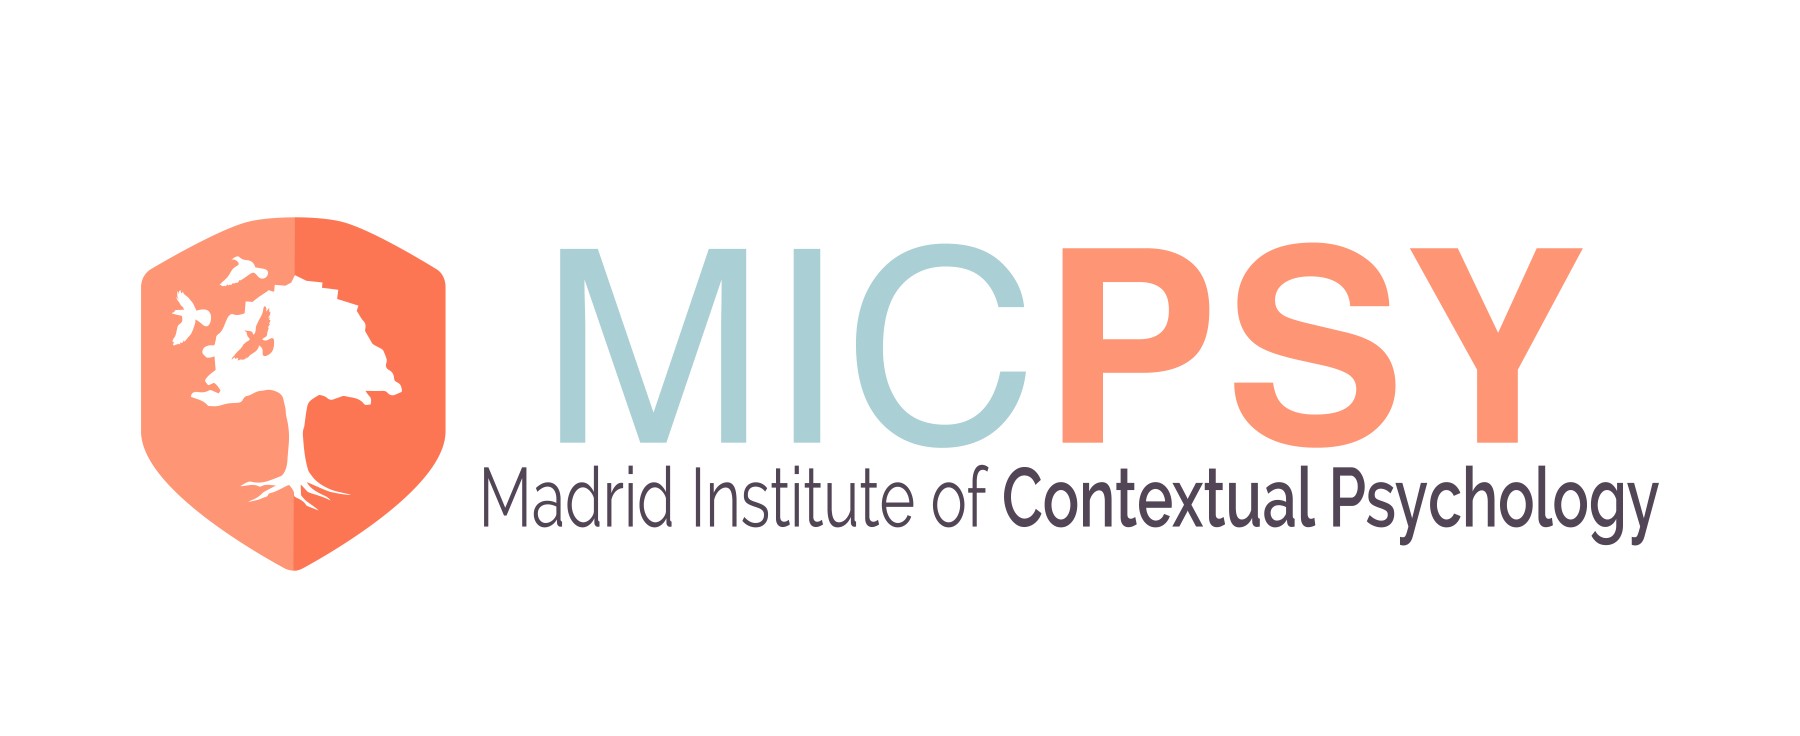 Curso online – Especialista ACT en Infancia y Adolescencia - Instituto de Psicología Contextual Madrid - MICPSY